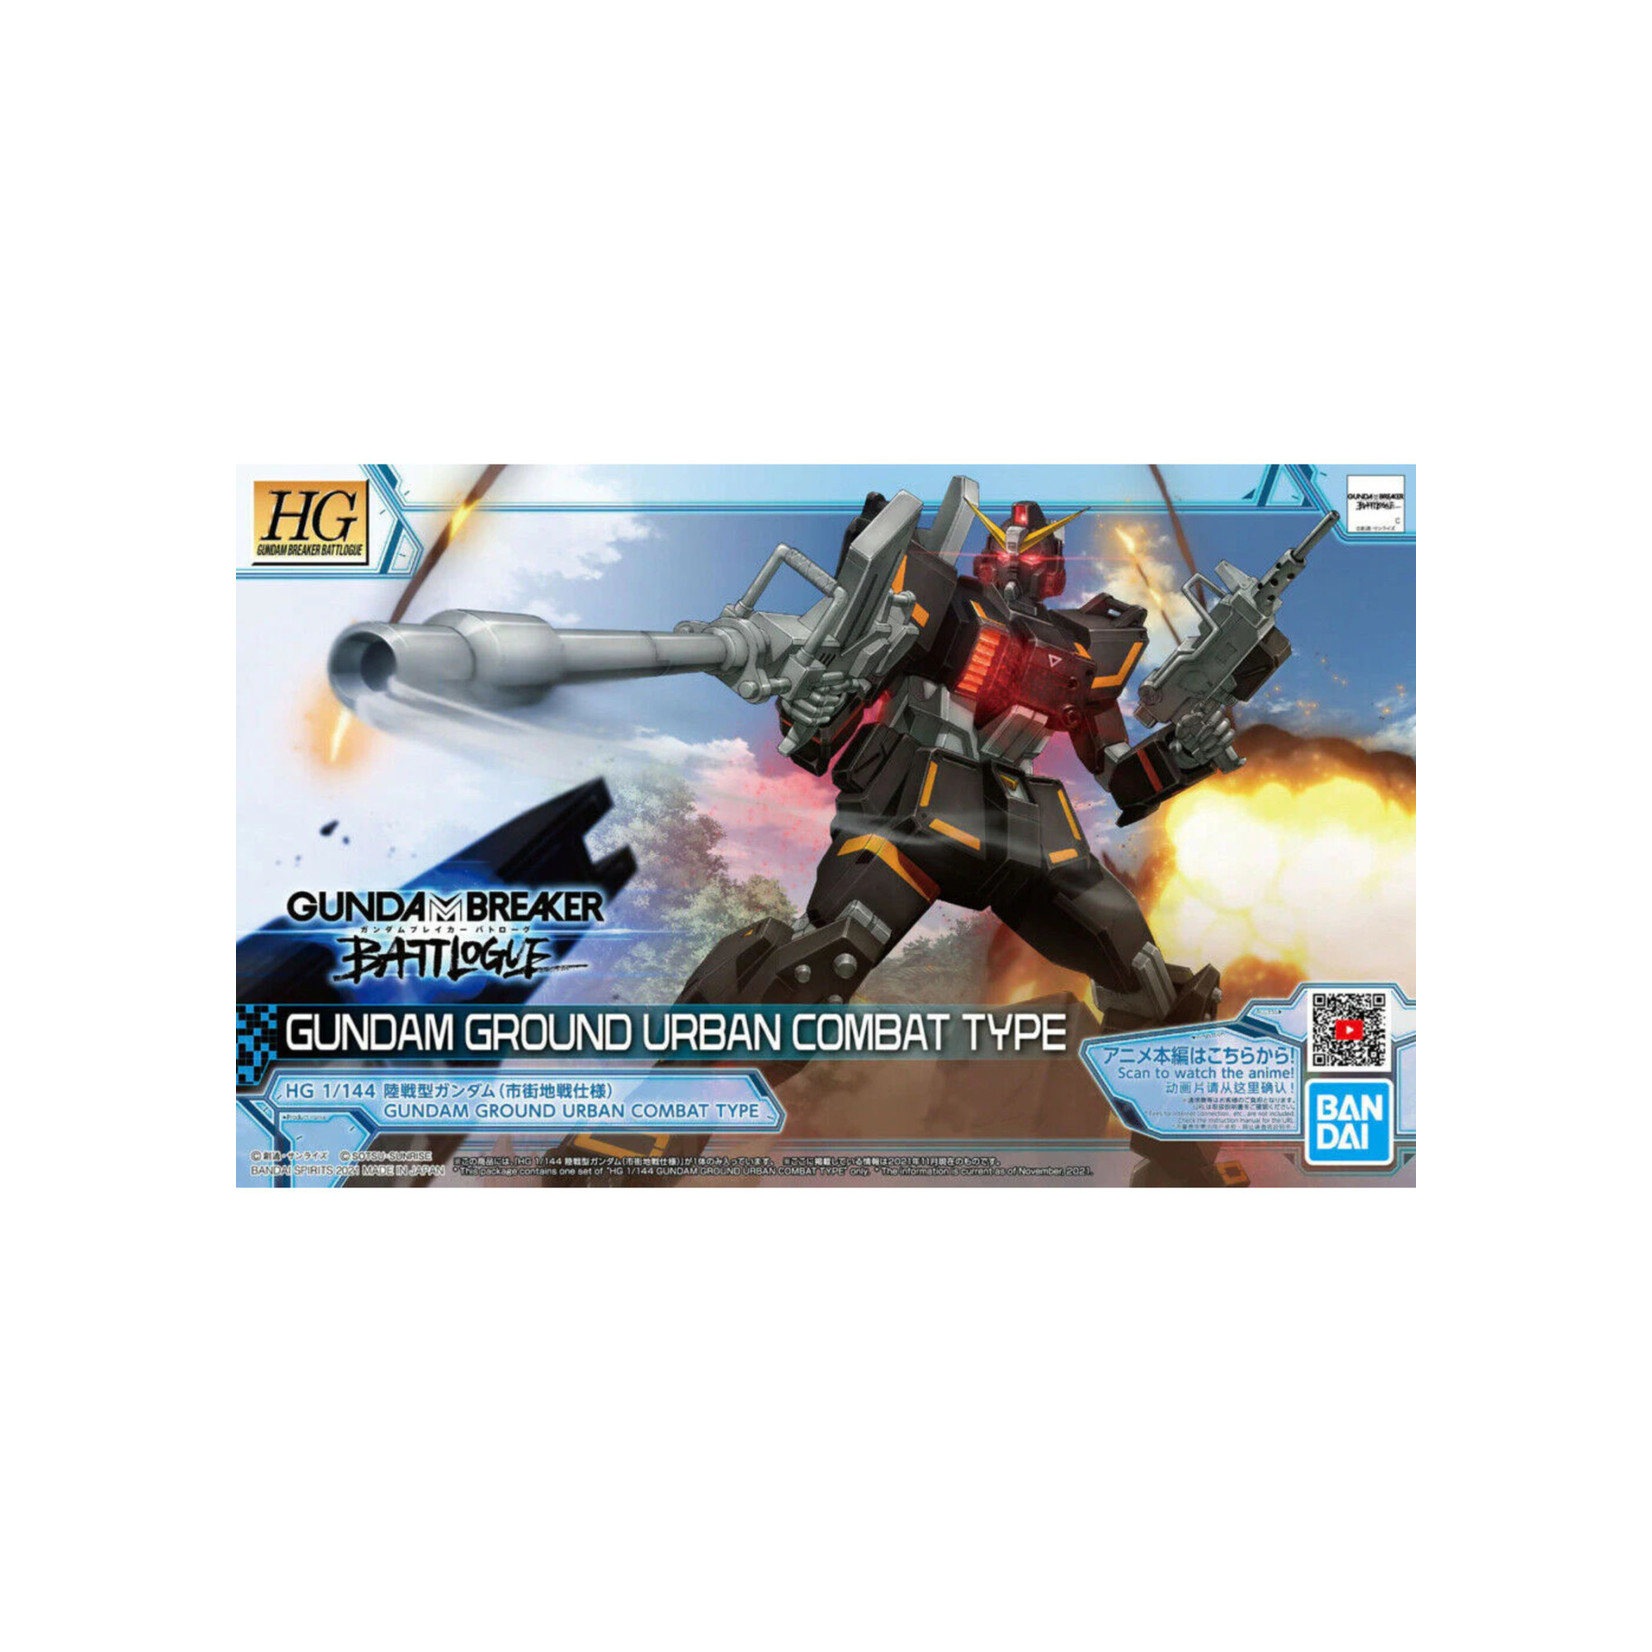 Bandai Bandai 2555031 HG Gundam Ground Ur Combat Type